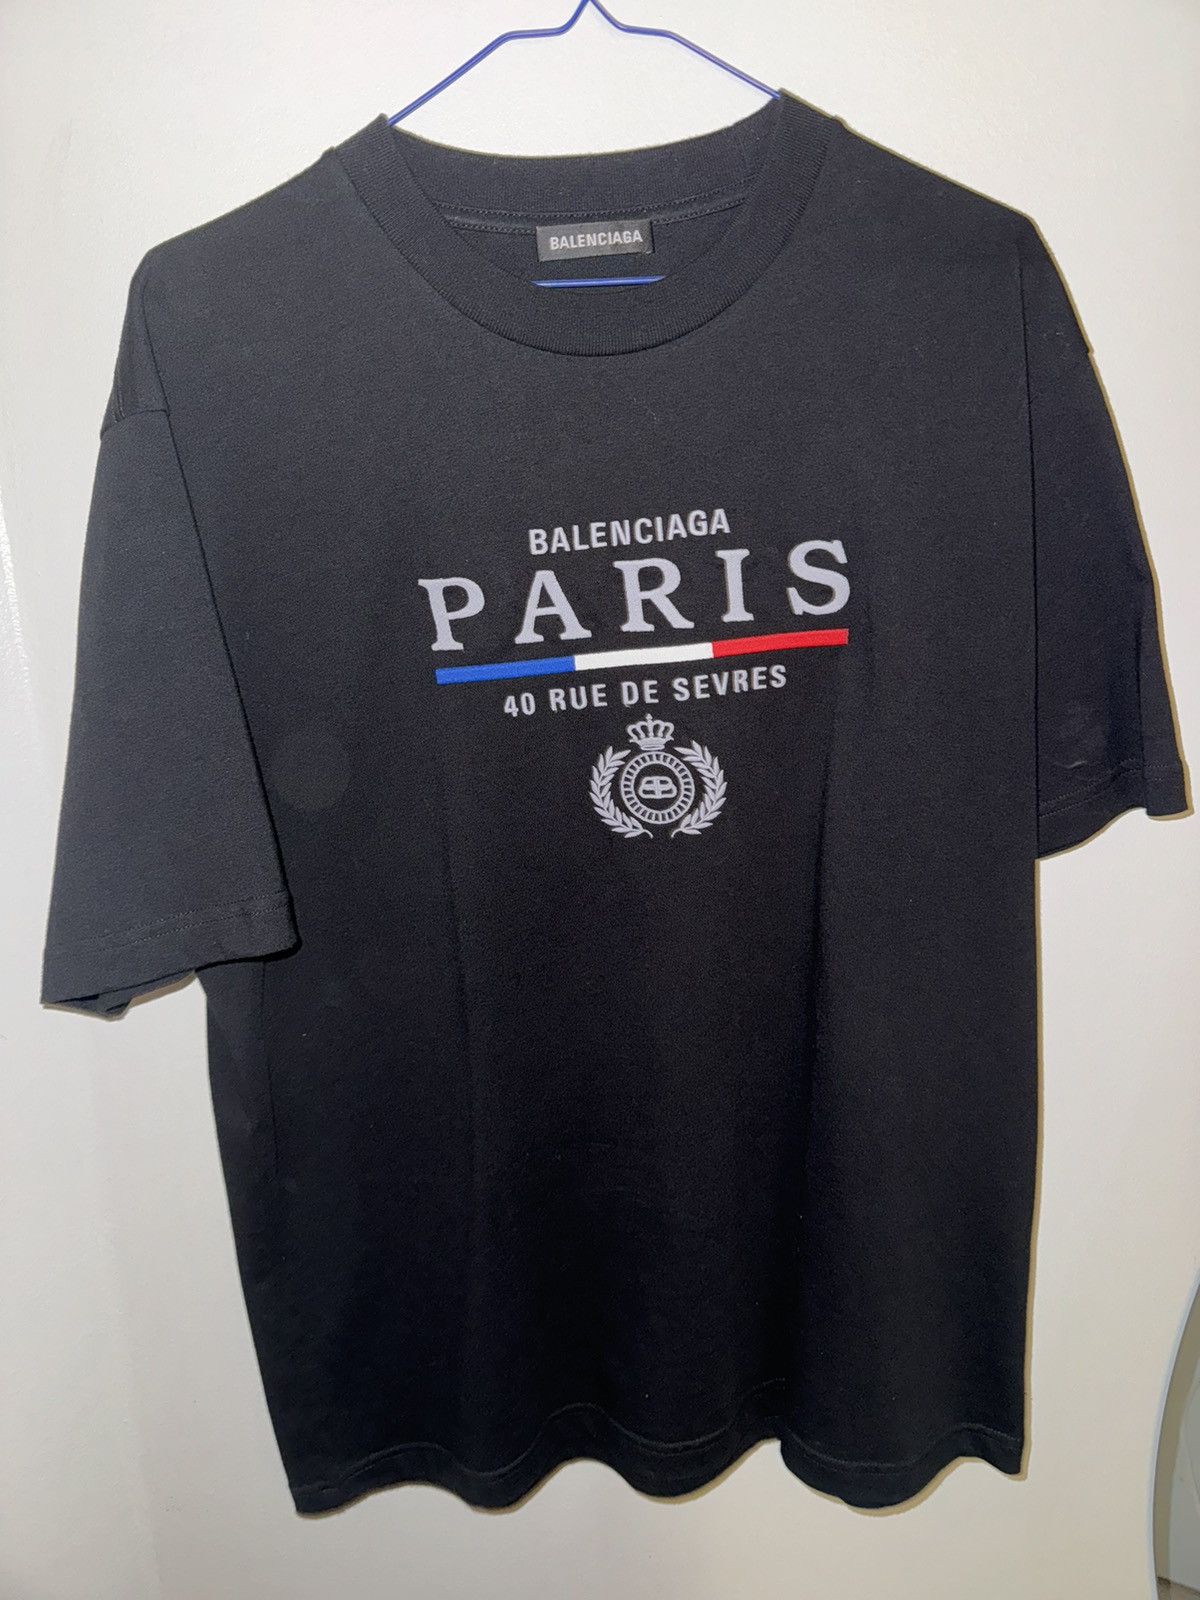 Balenciaga balenciaga paris 40 rue de sevres t-shirt size XS | Grailed